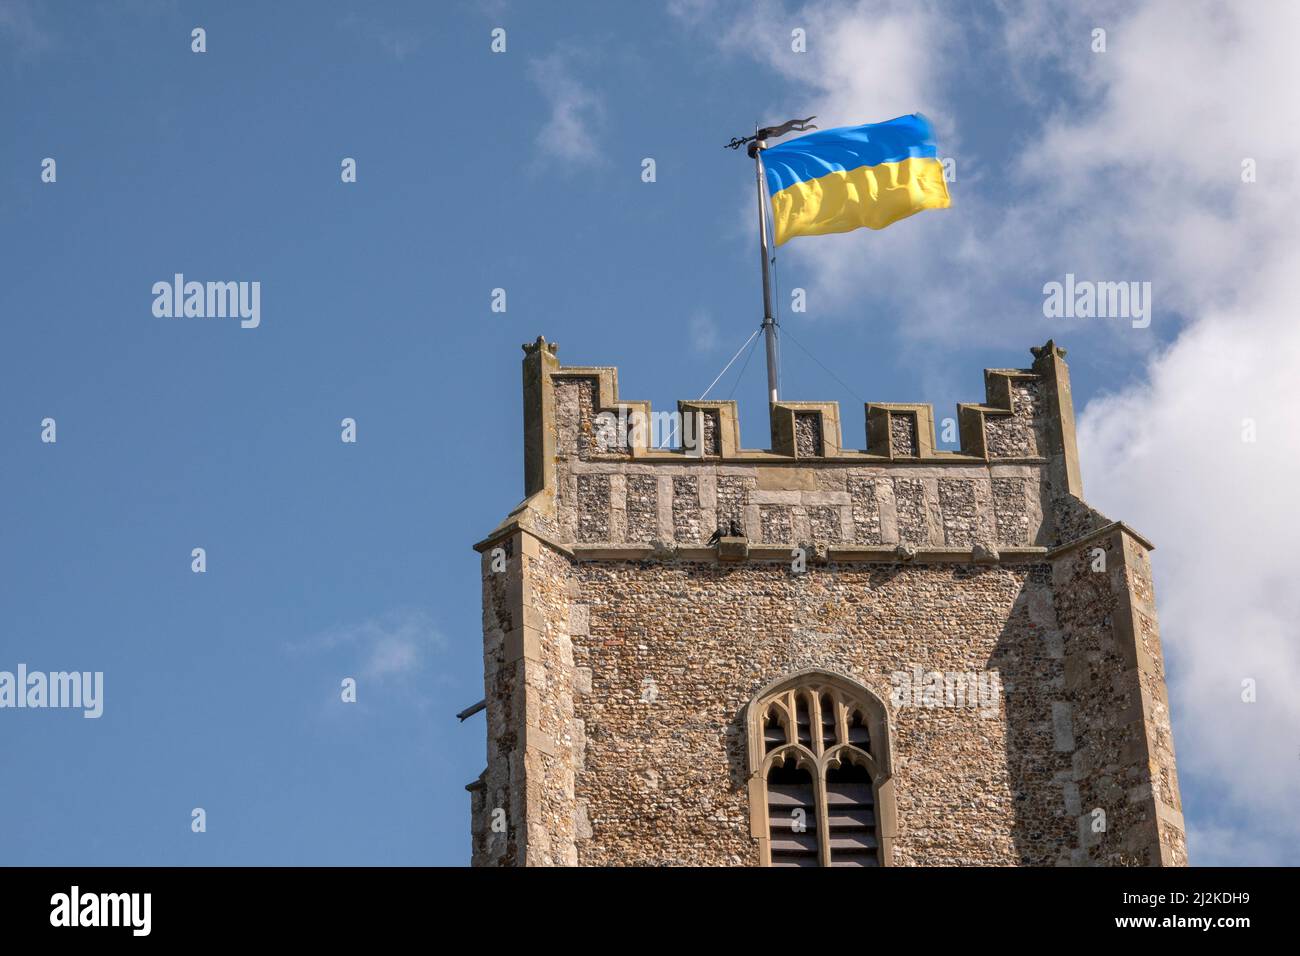 Die zweifarbige Flagge der Ukrainischen Volksrepublik, die vom Kirchturm von St. Peter und St. Paul's, Aldeburgh, Suffolk, weht. Bei strahlendem Sonnenschein. Stockfoto